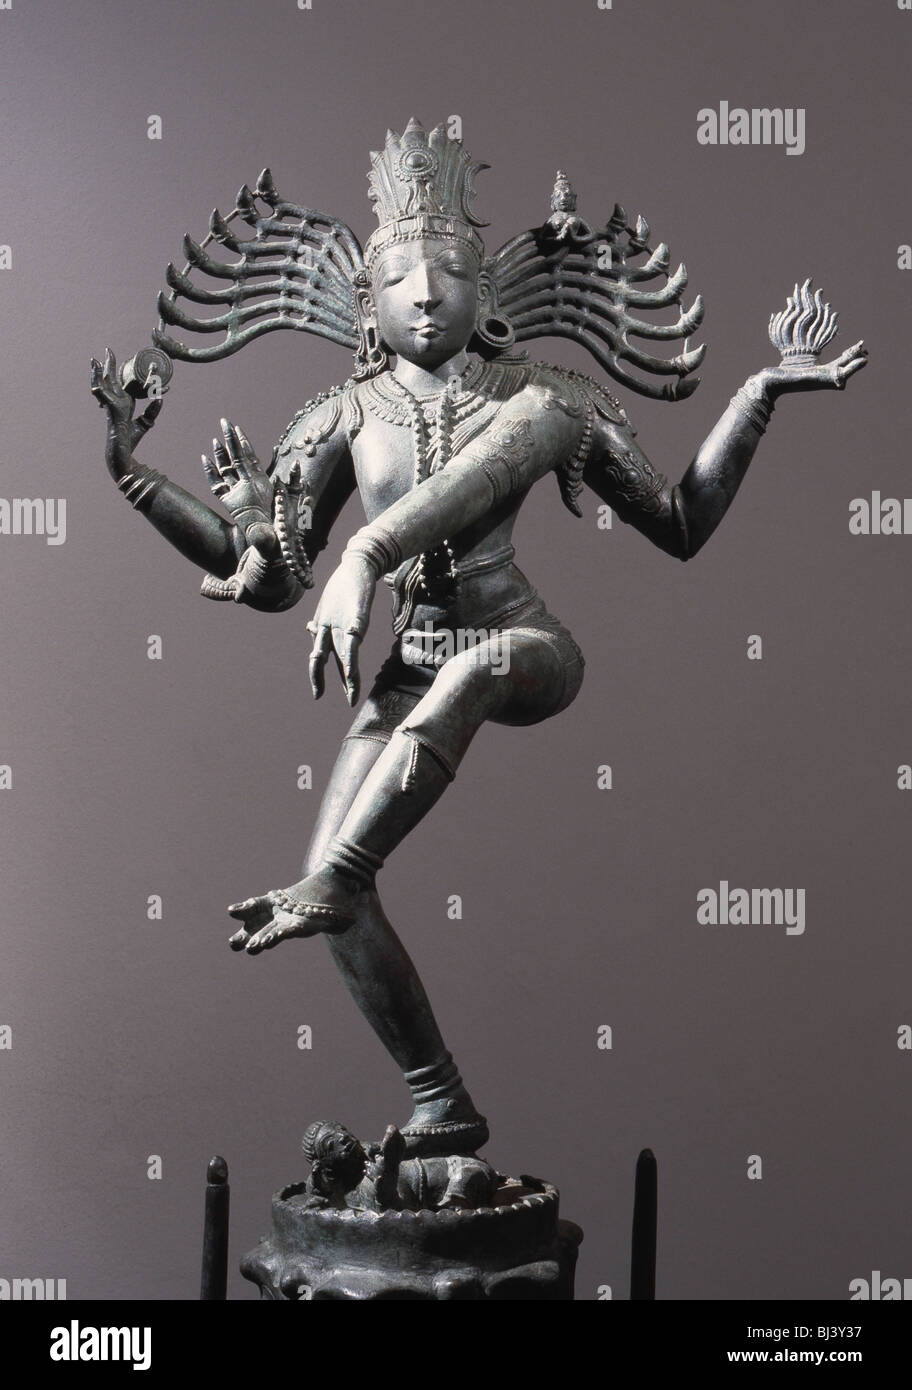 Natajara, der Hindu-Herr des Tanzes, eine Darstellung des Lords Shiva als der kosmische Tänzer, Indian. Künstler: Werner Forman Stockfoto